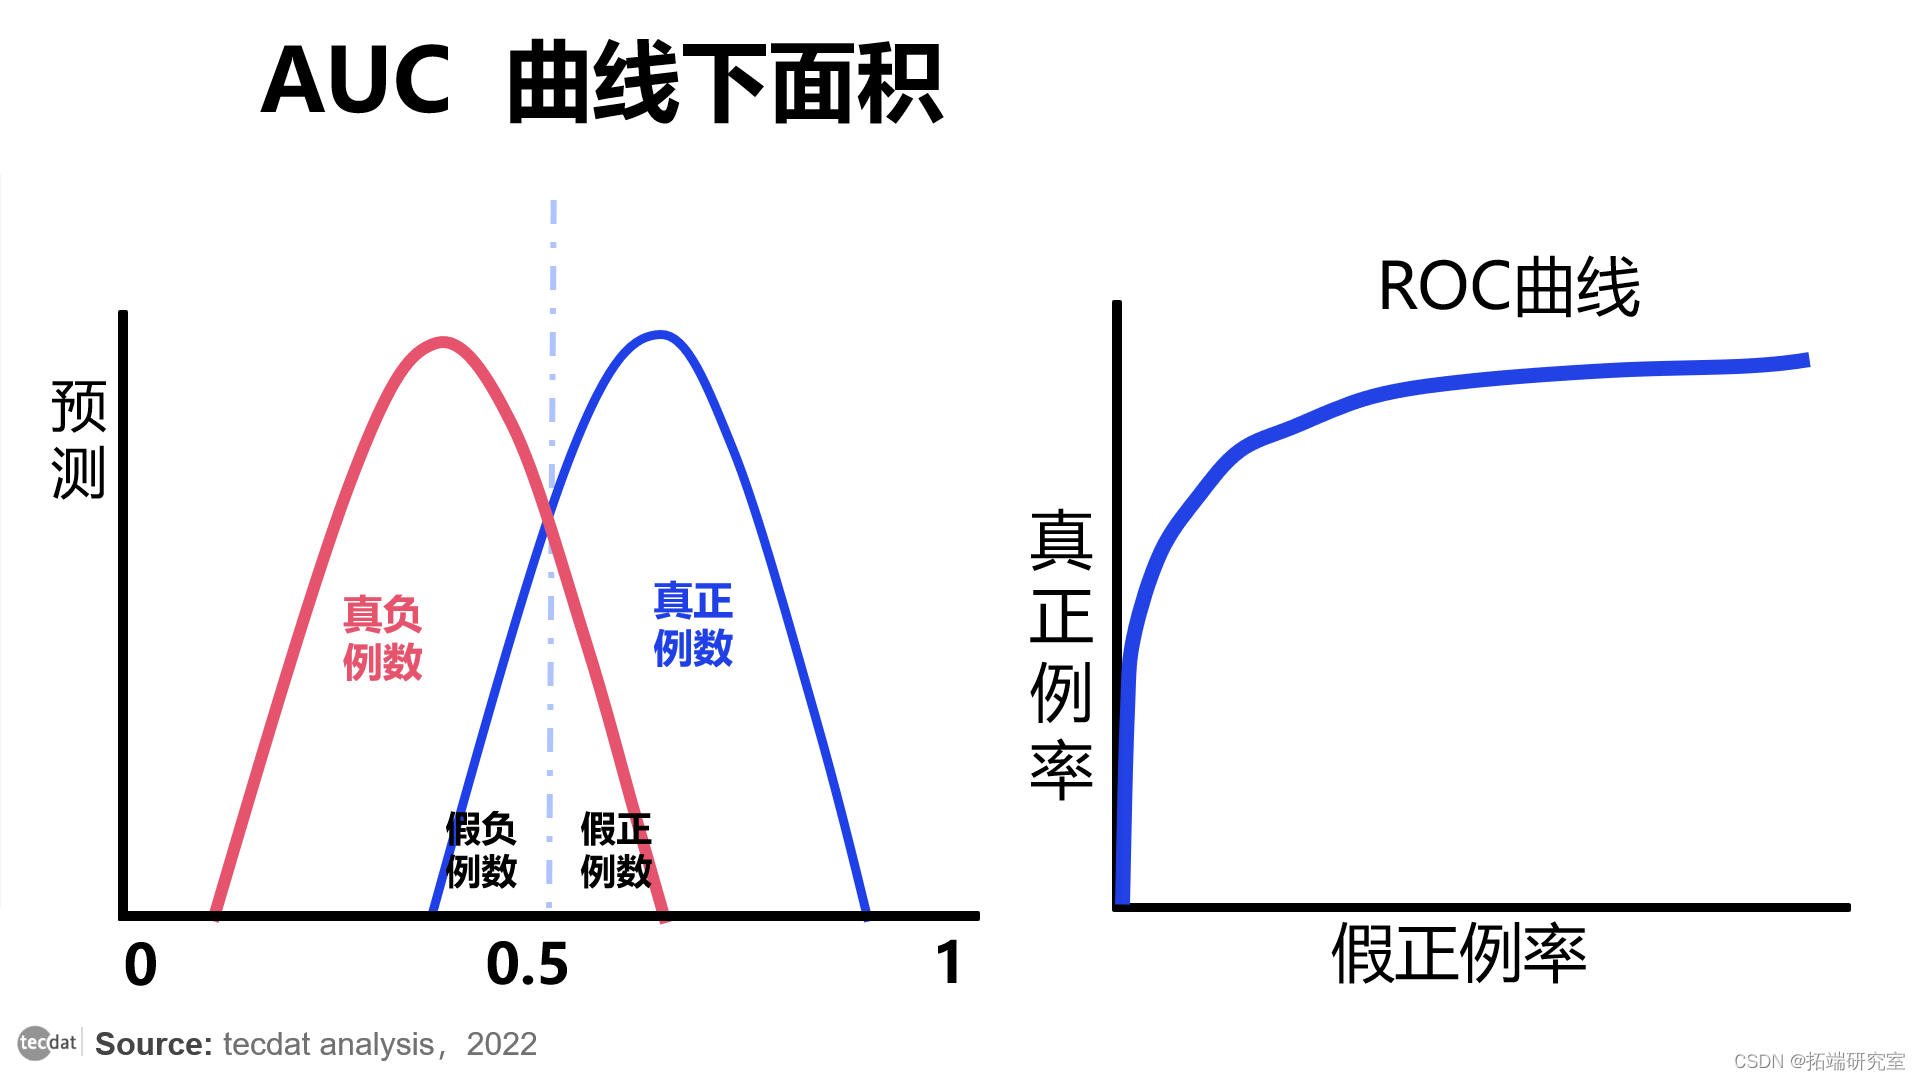 视频|分类模型评估:精确率、召回率、ROC曲线、AUC与R语言生存分析时间依赖性ROC实现|附代码数据_ML_06